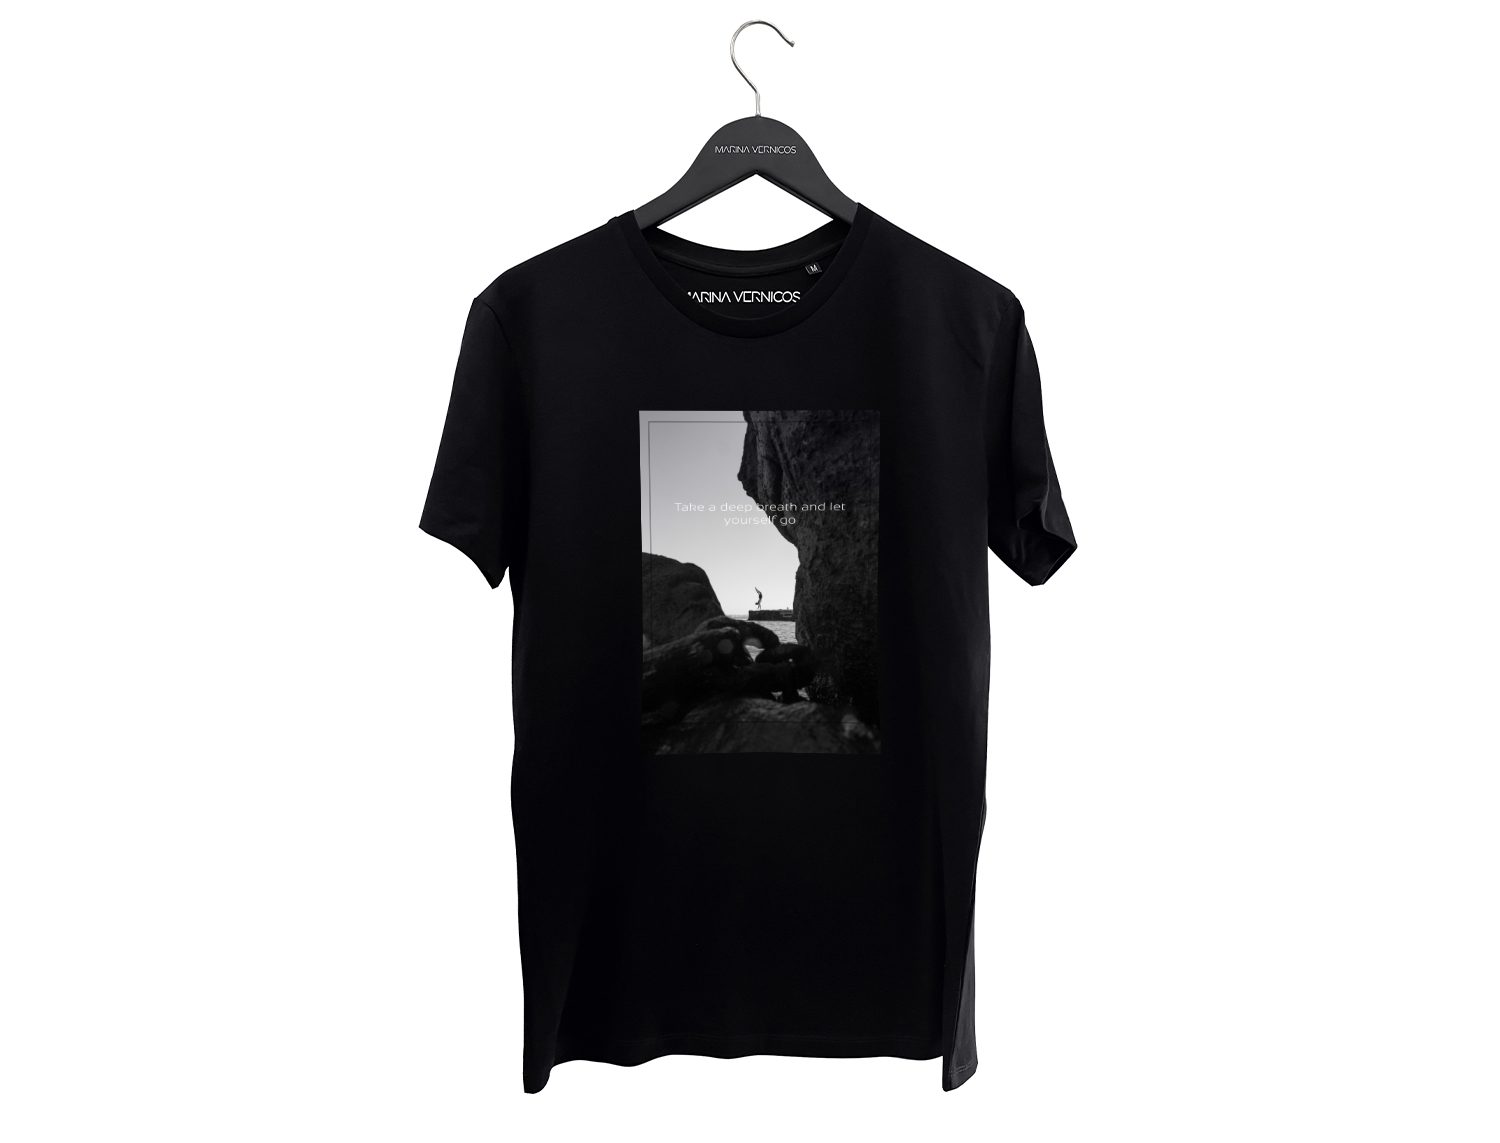 Μαρινα Βερνίκου  Take a deep breath and let yourself go - Mαύρο μπλουζάκι T-Shirt